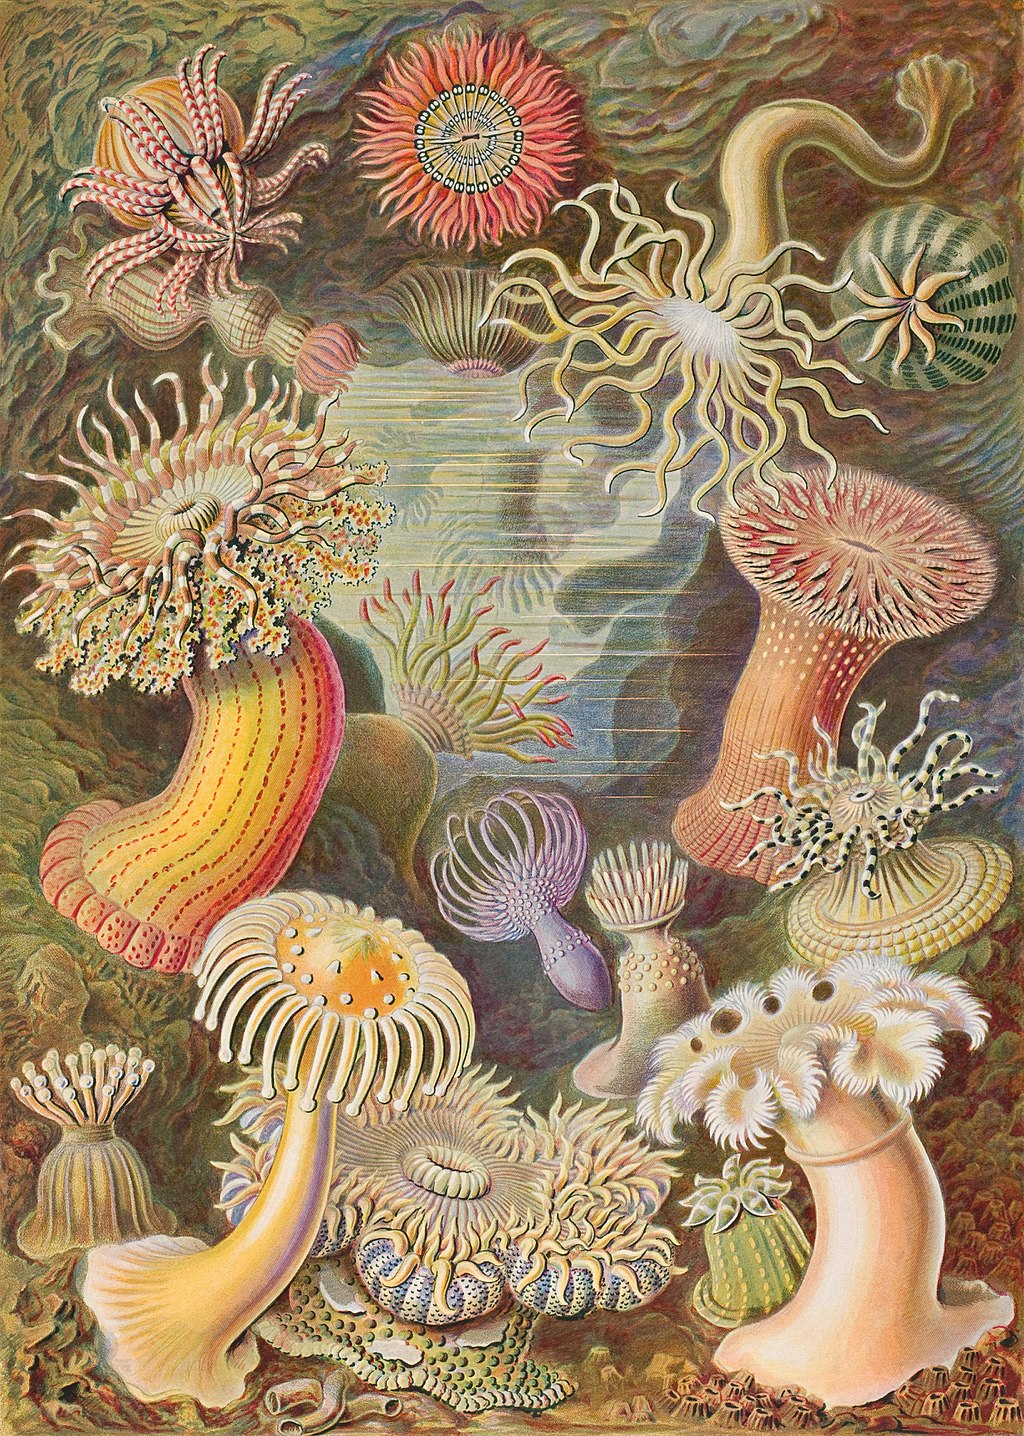 Placa 49 de Kunstformen der Natur de Ernst Haeckel de 1904, que muestra varias anémonas de mar clasificadas como Actiniae.